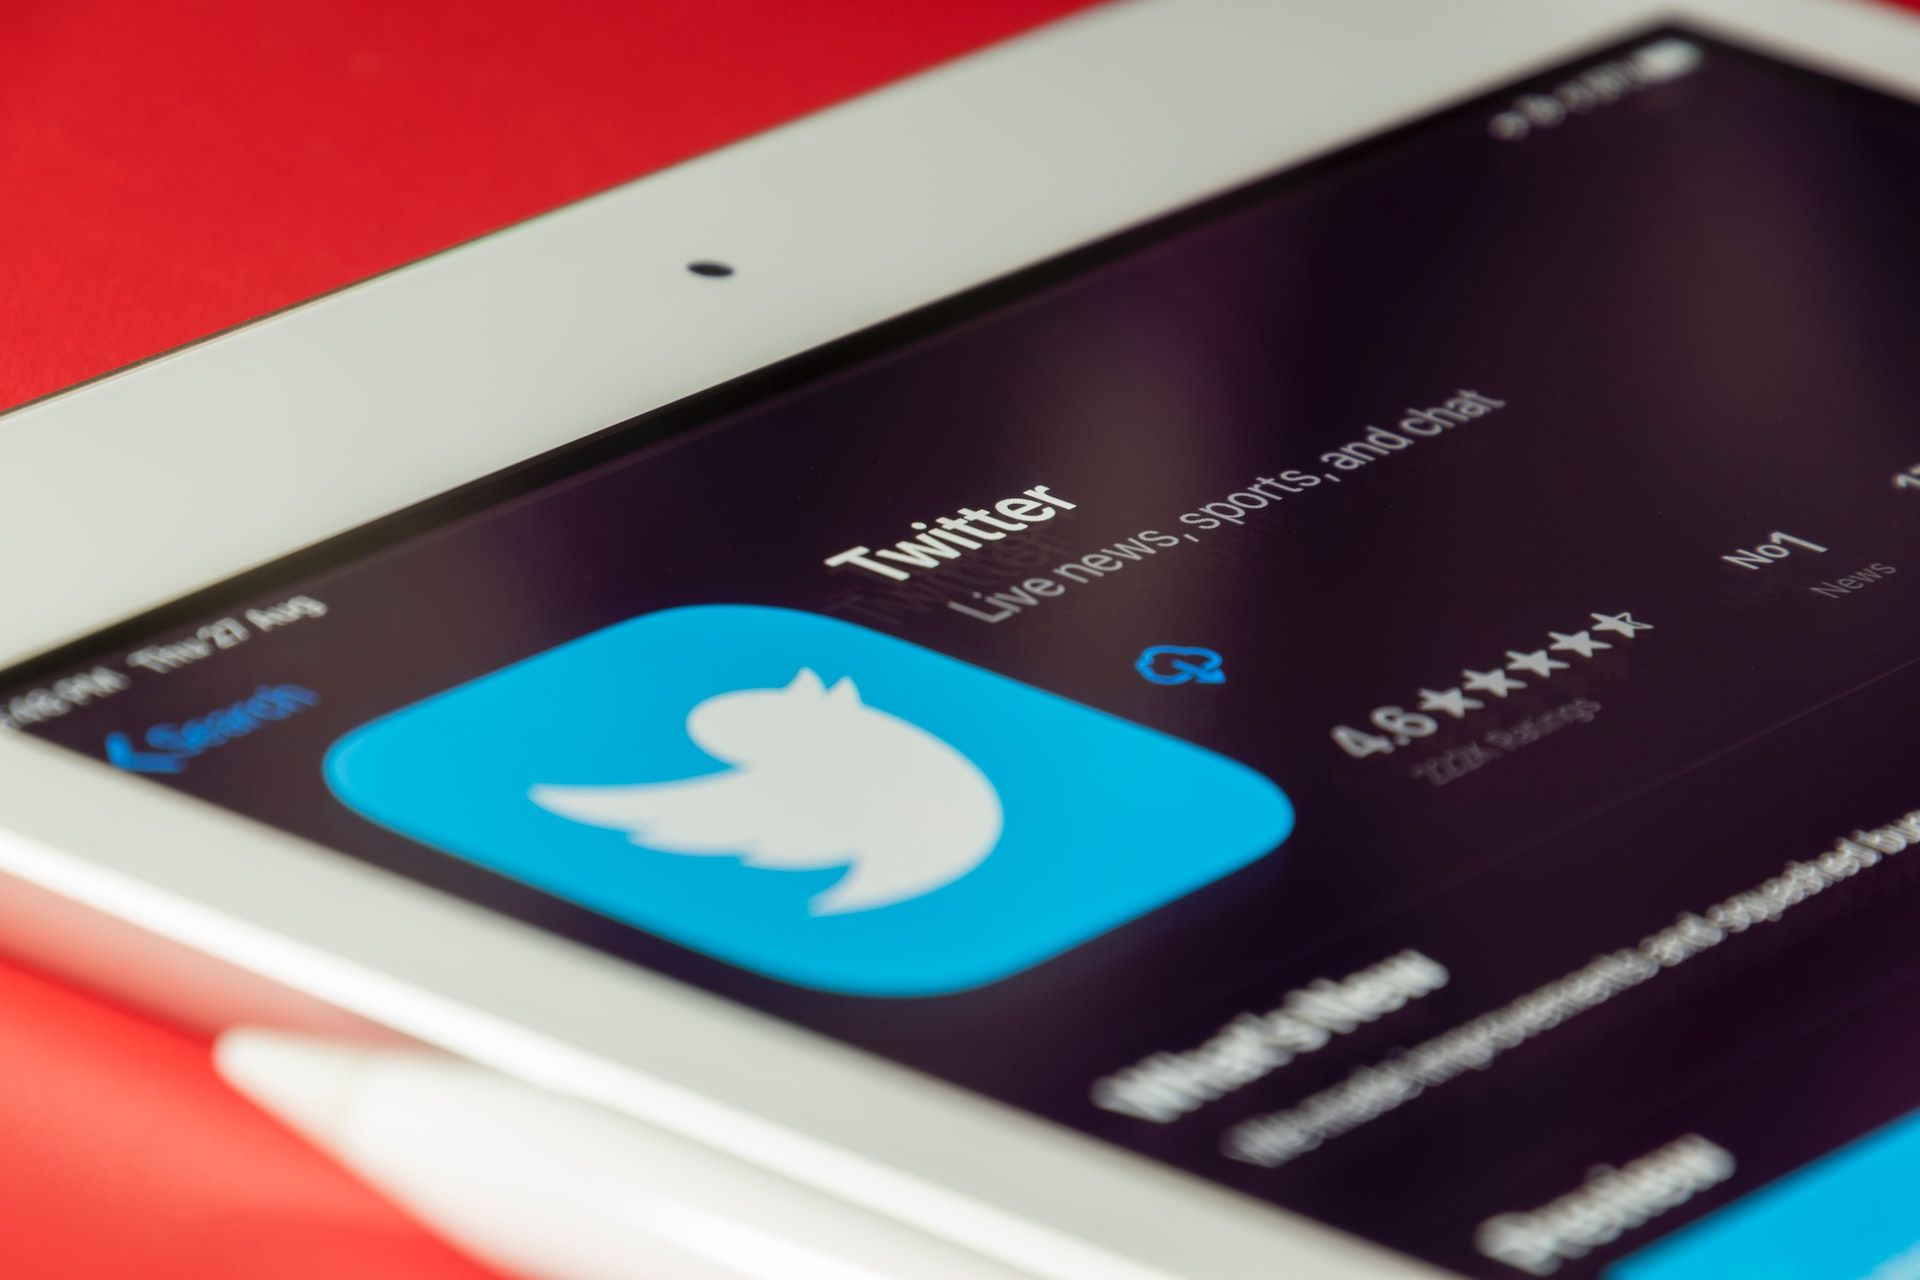 Followers Twitter Terbanyak Di Dunia. 8 Akun Twitter dengan Follower Terbanyak di Dunia